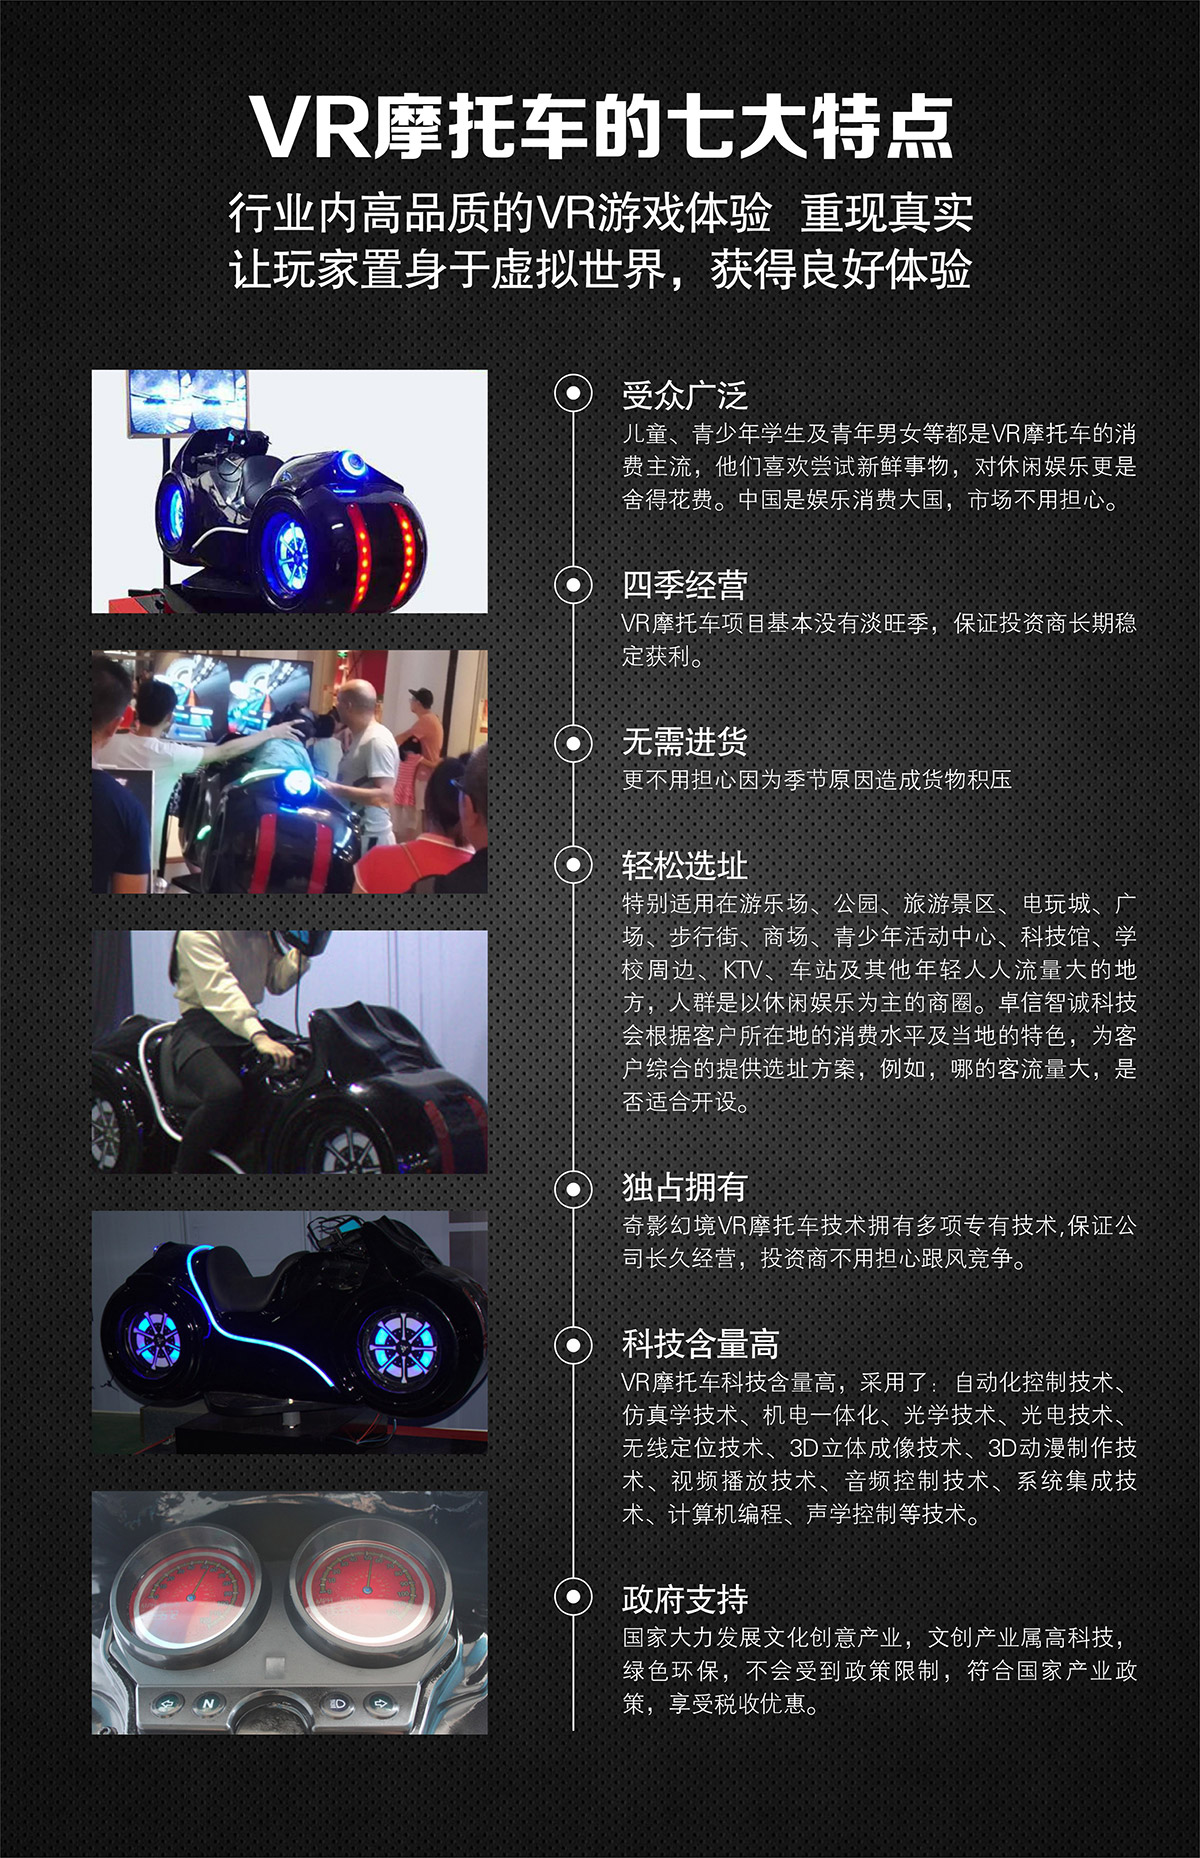 模拟安全VR摩托车特点高品质游戏体验.jpg